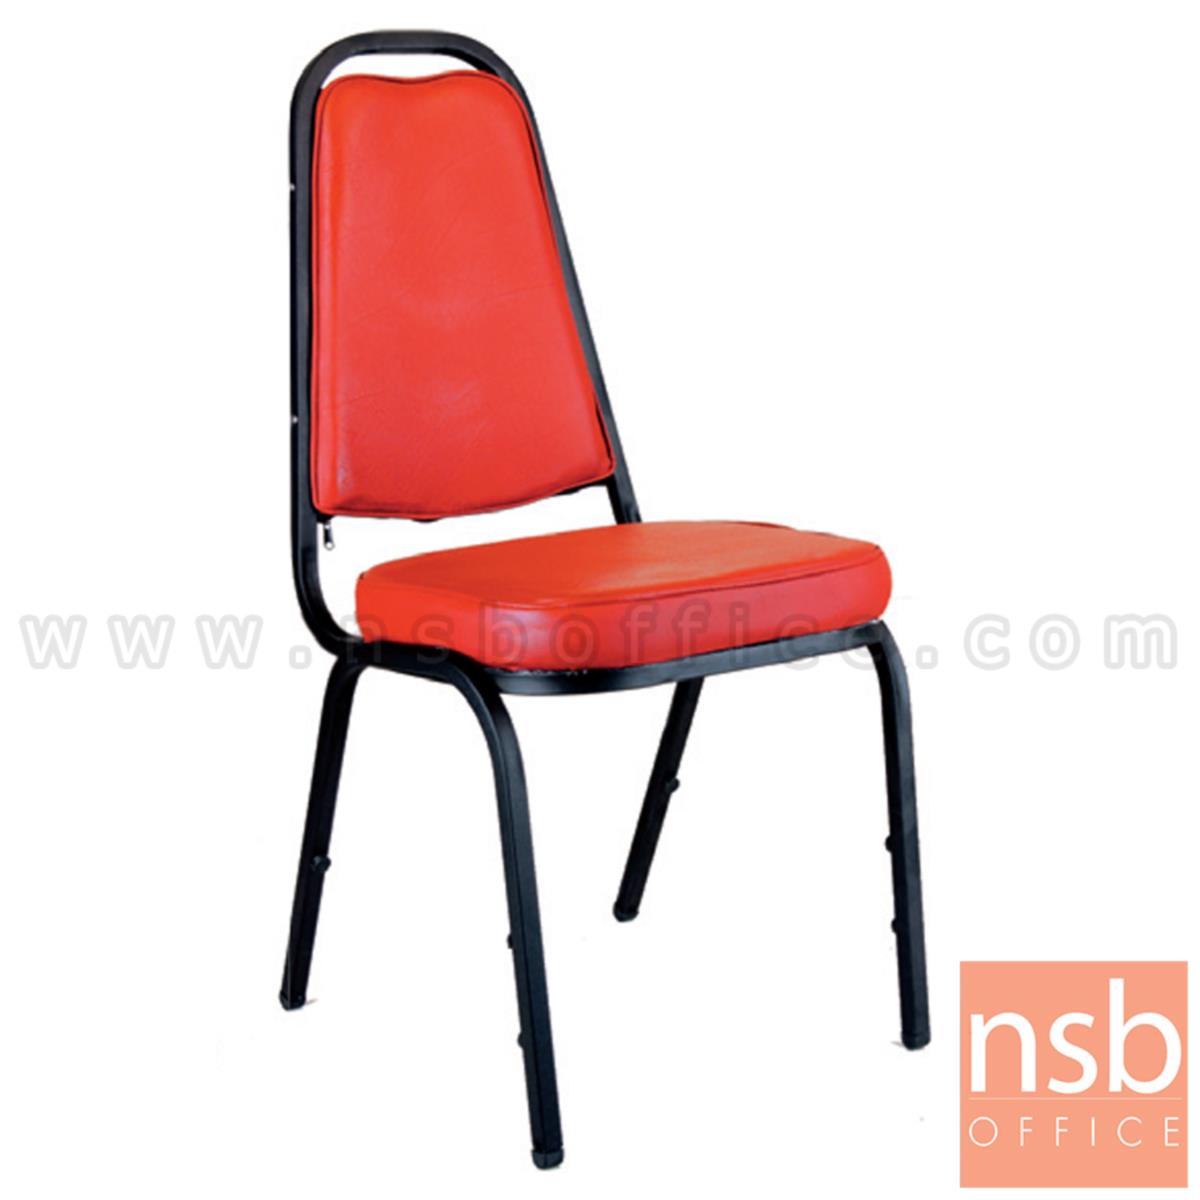 เก้าอี้อเนกประสงค์จัดเลี้ยง รุ่น Brosnan (บรอสแนน) ขาเหล็ก 